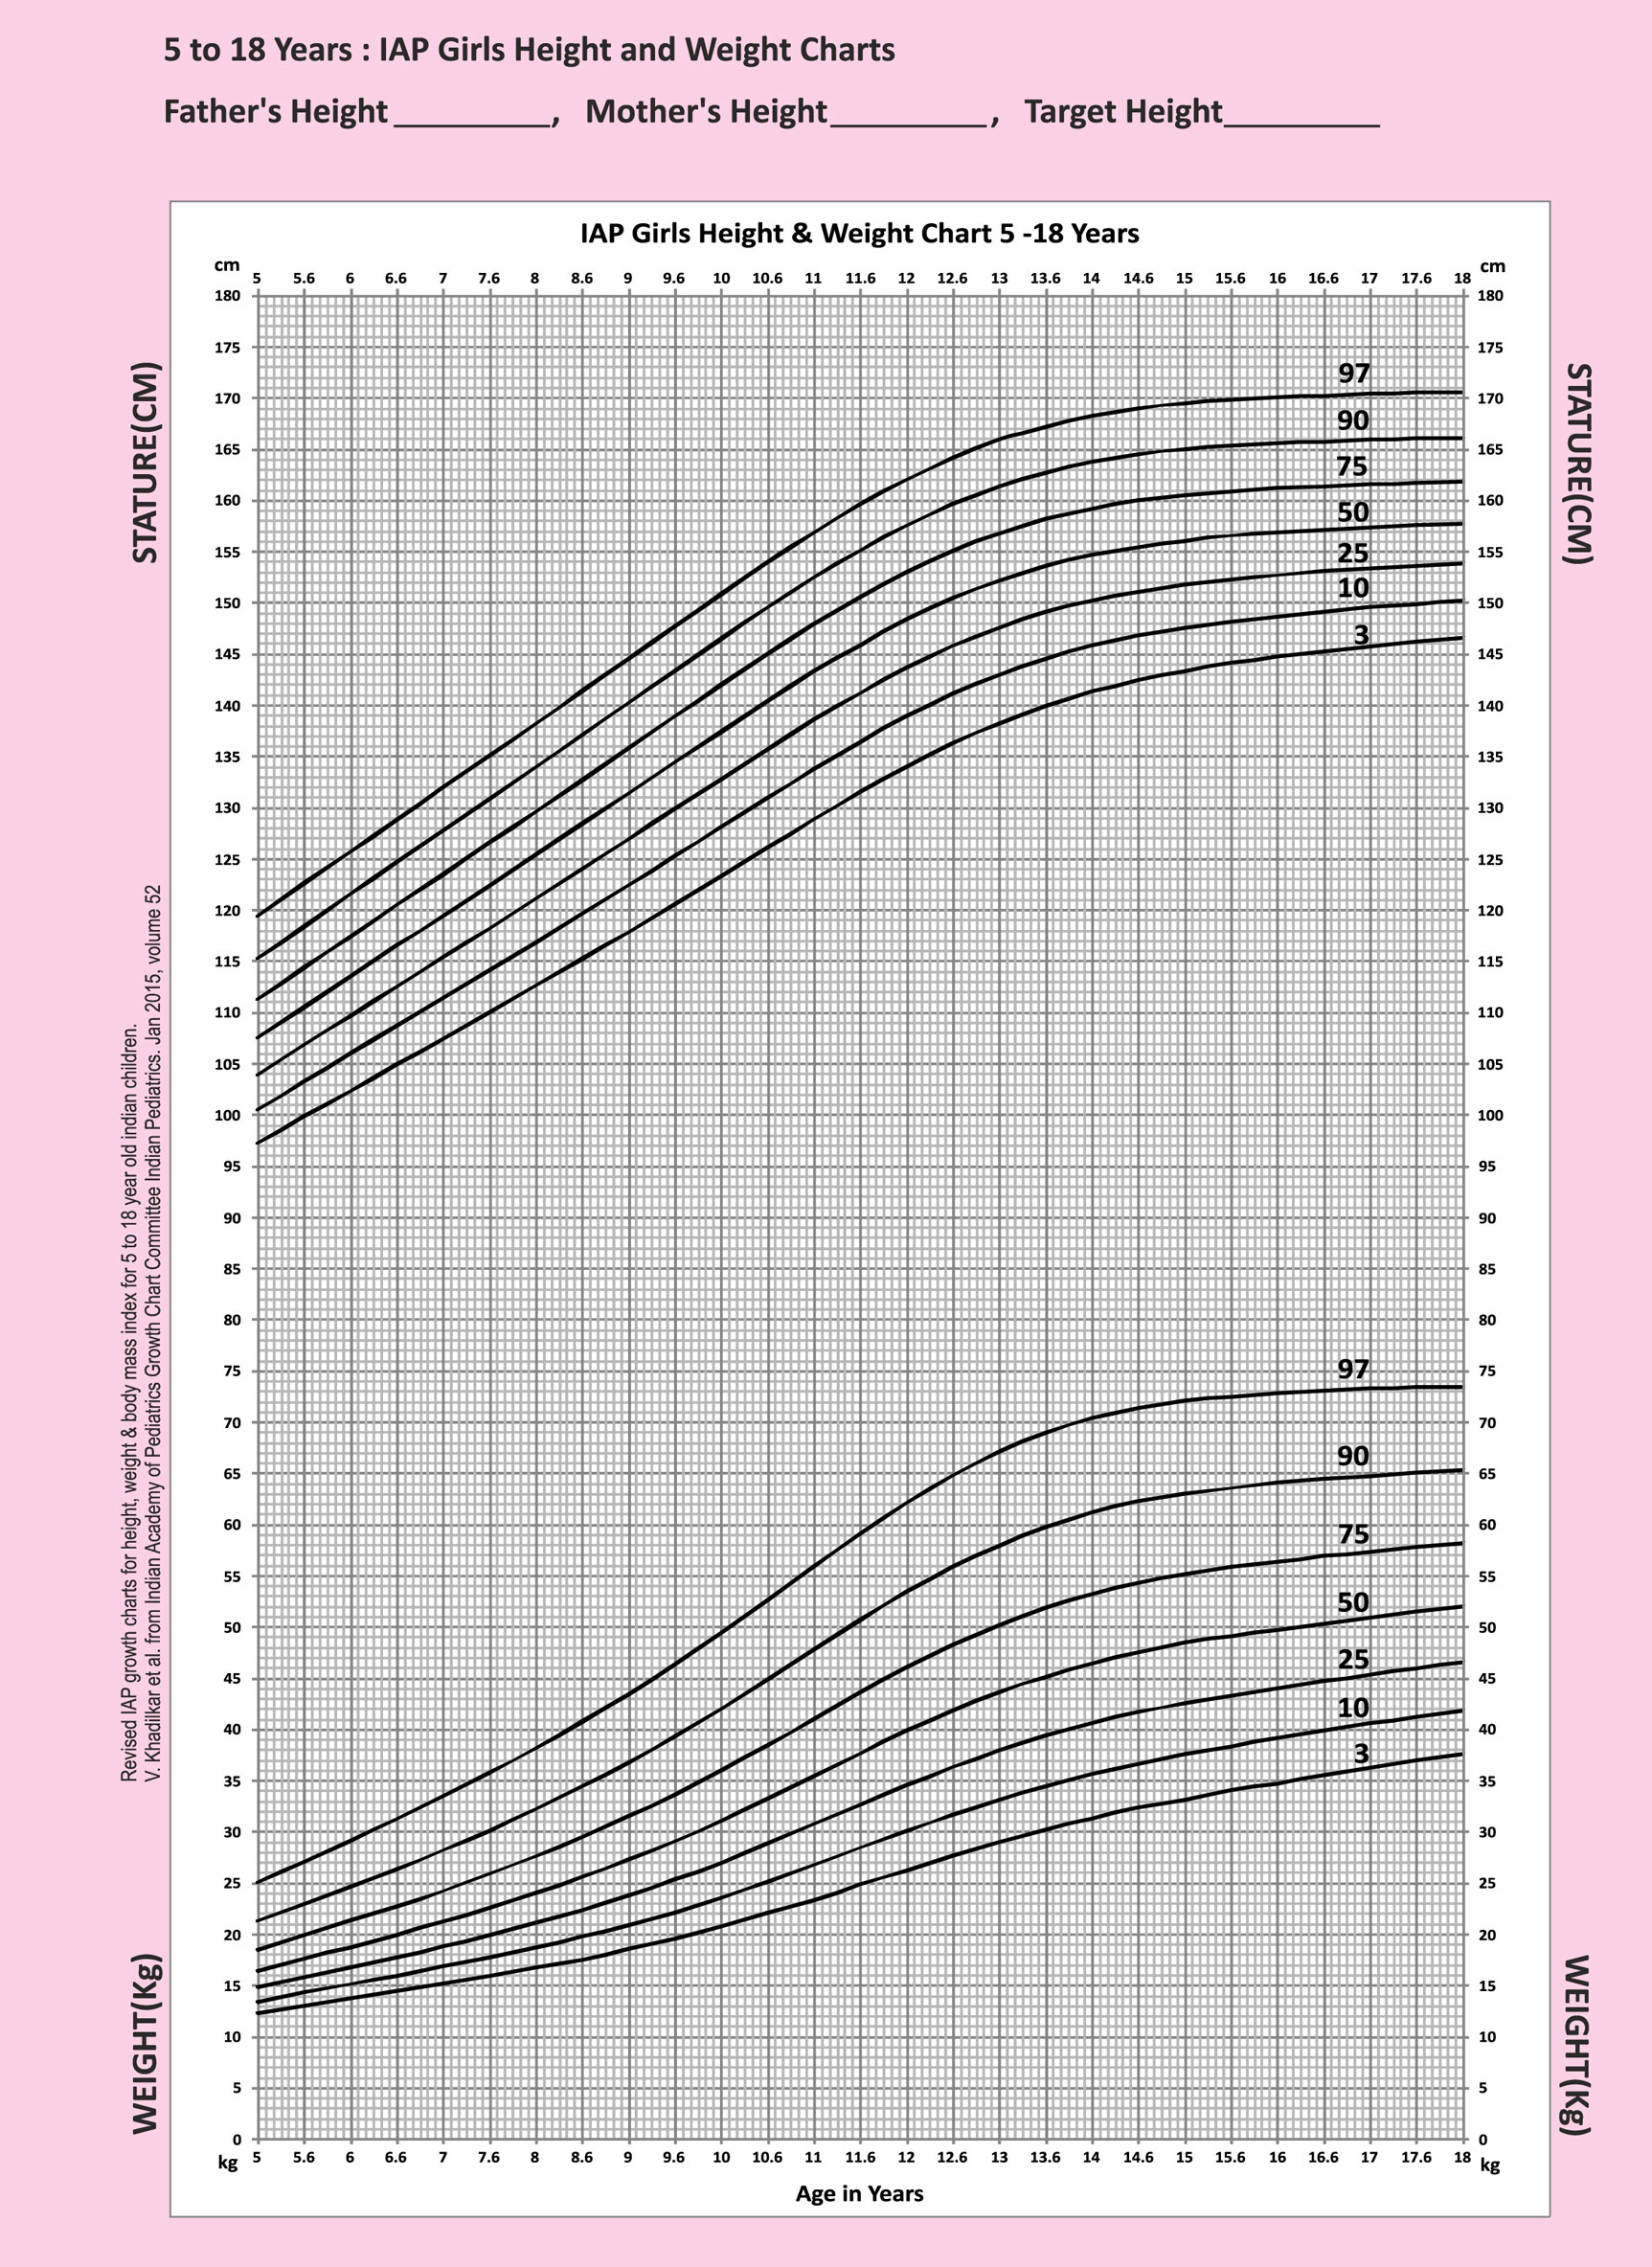 IAP-Girls-Height-&-Weight-chart-5-18-years